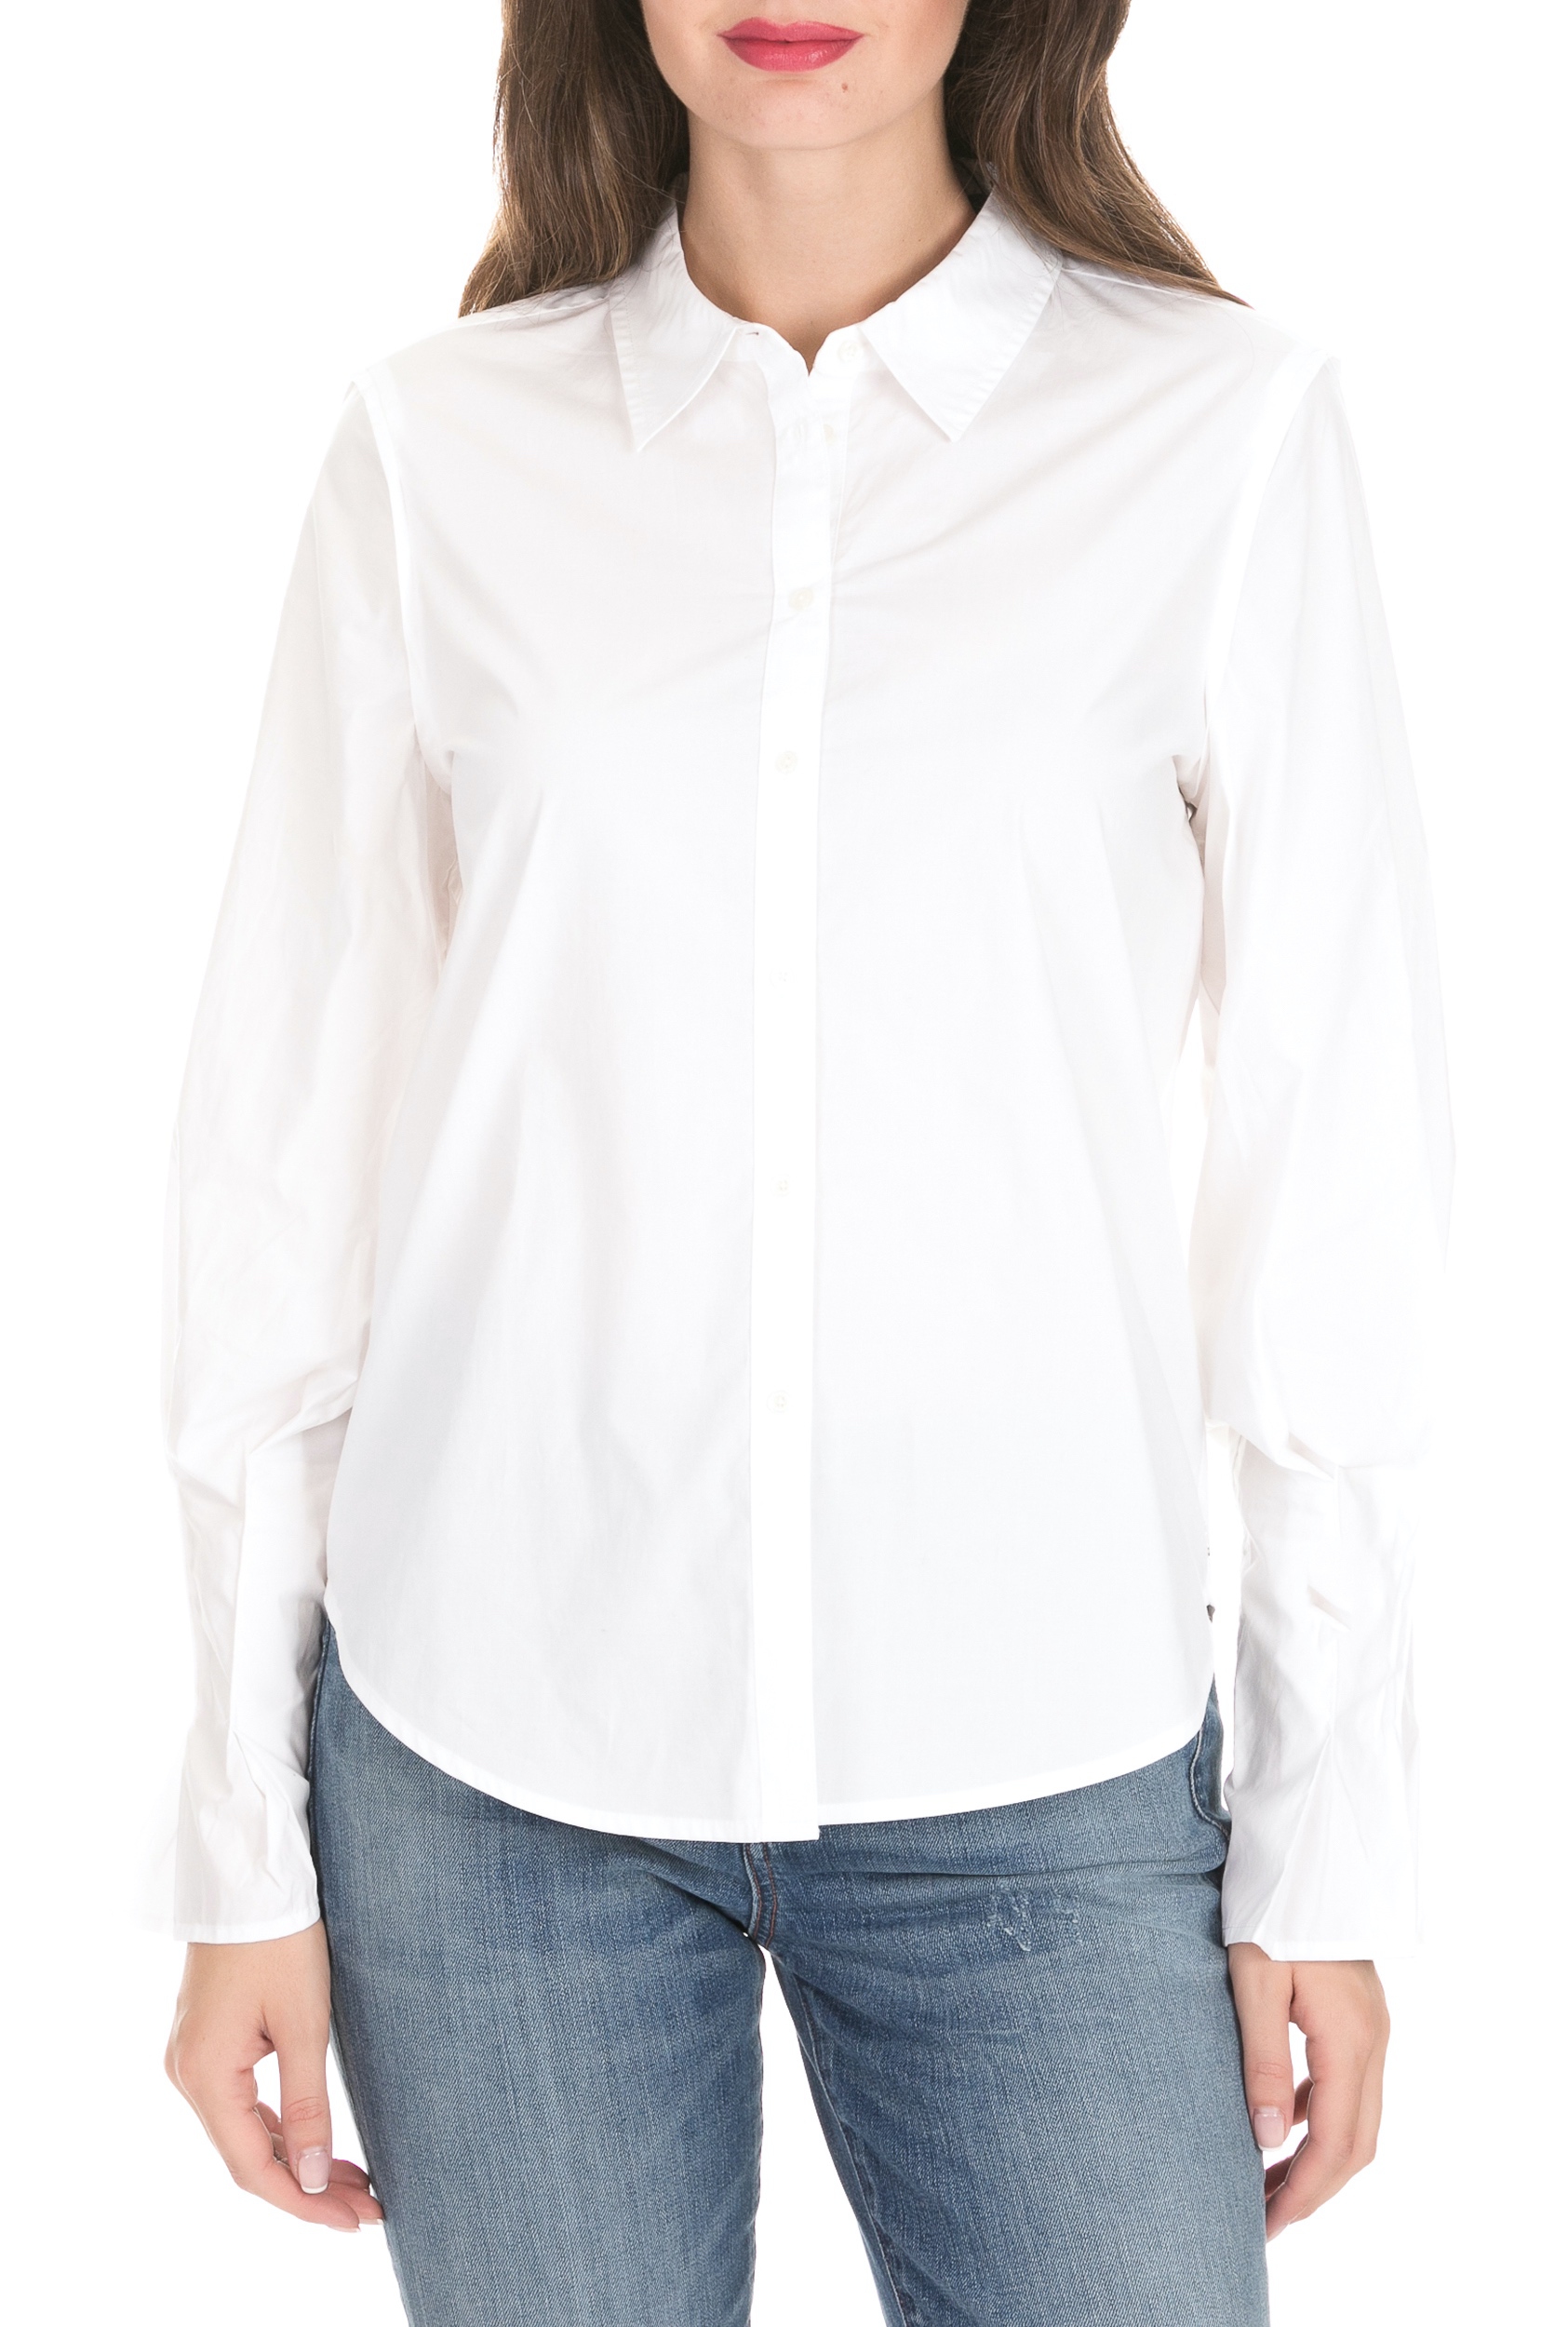 Γυναικεία/Ρούχα/Πουκάμισα/Μακρυμάνικα SCOTCH & SODA - Γυναικείο πουκάμισο SCOTCH & SODA λευκό